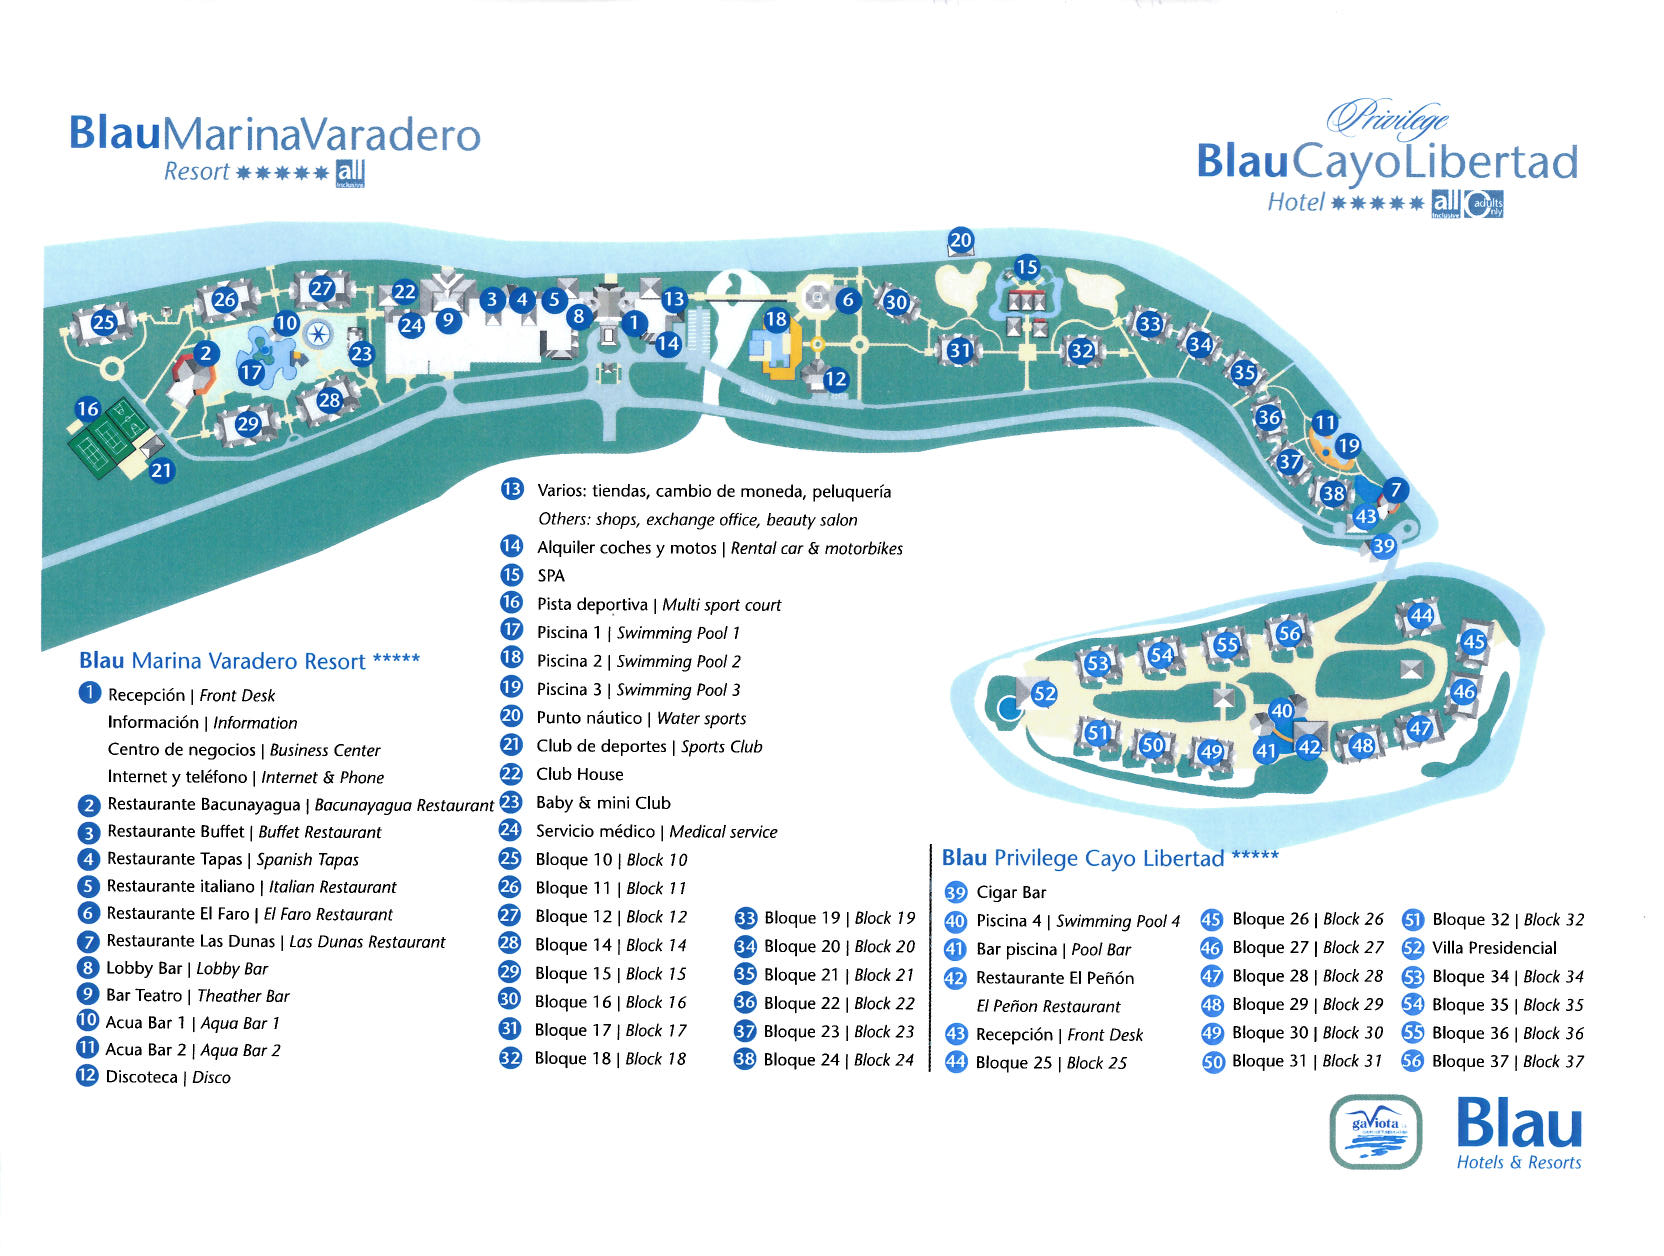 VRA BlauMarina Resort Map.aspx?width=1664&height=&ext= 